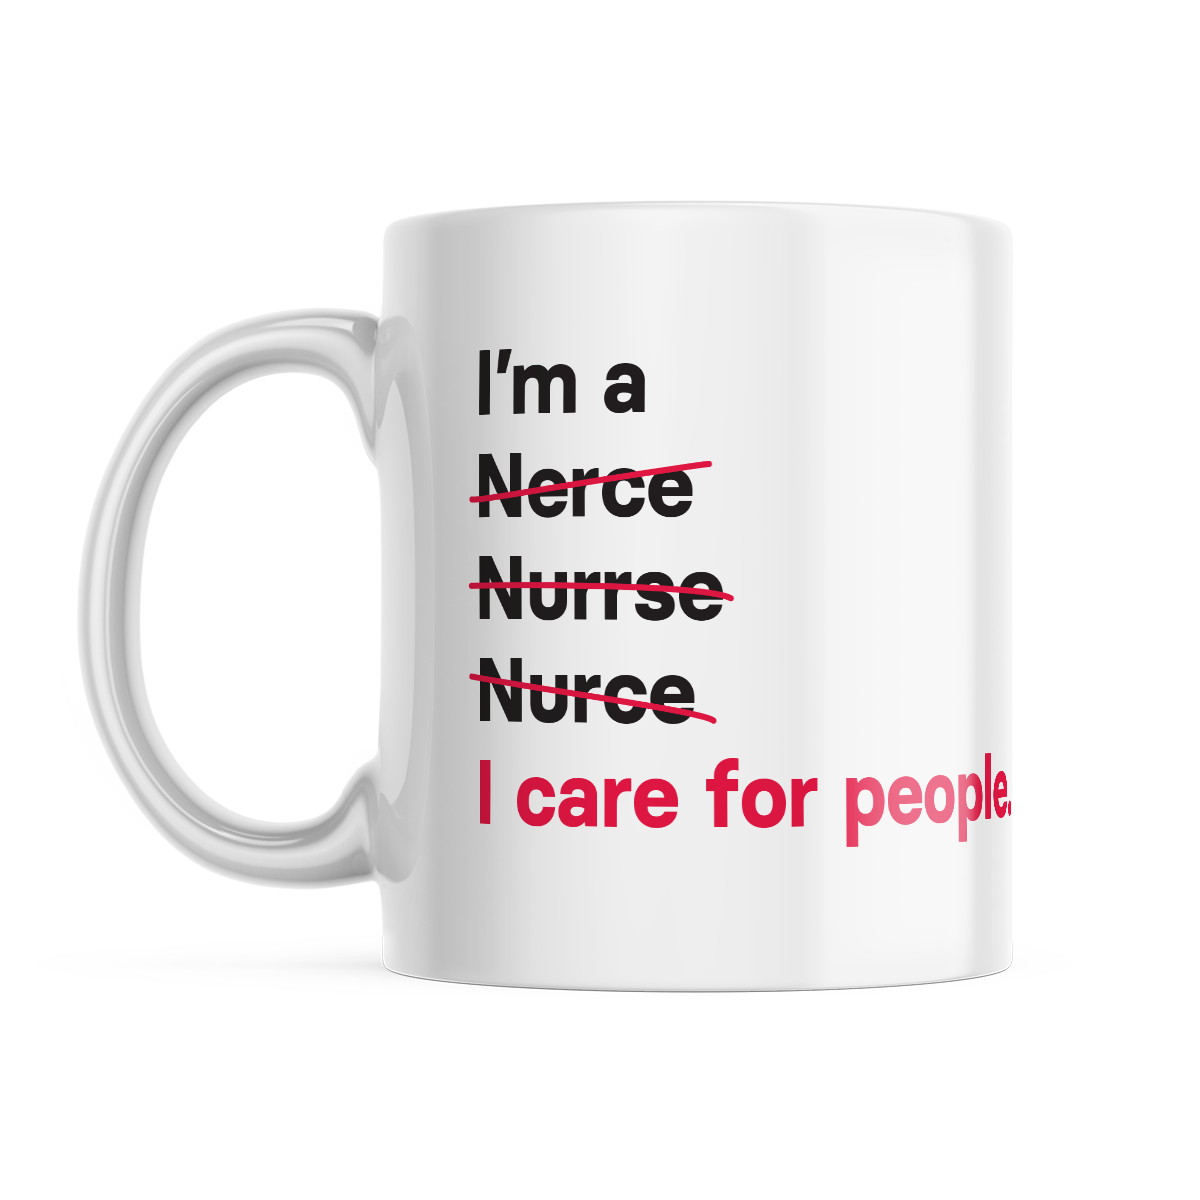 I'm a Nurse